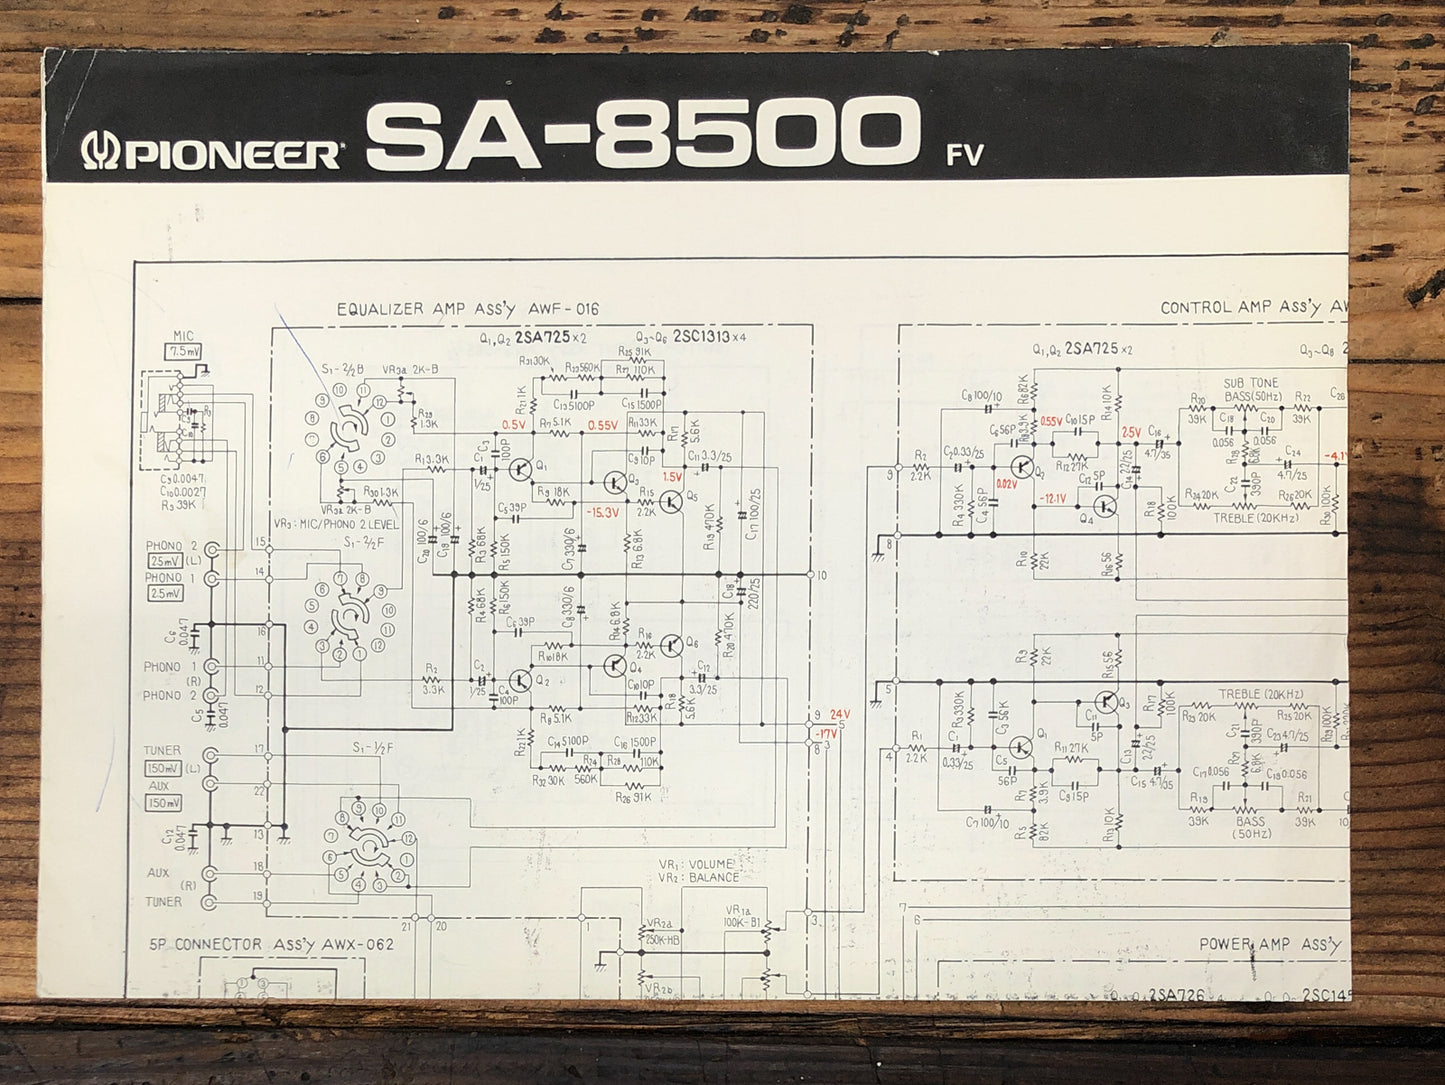 Pioneer SA-8500 FV Amplifier  Service Manual *Original*